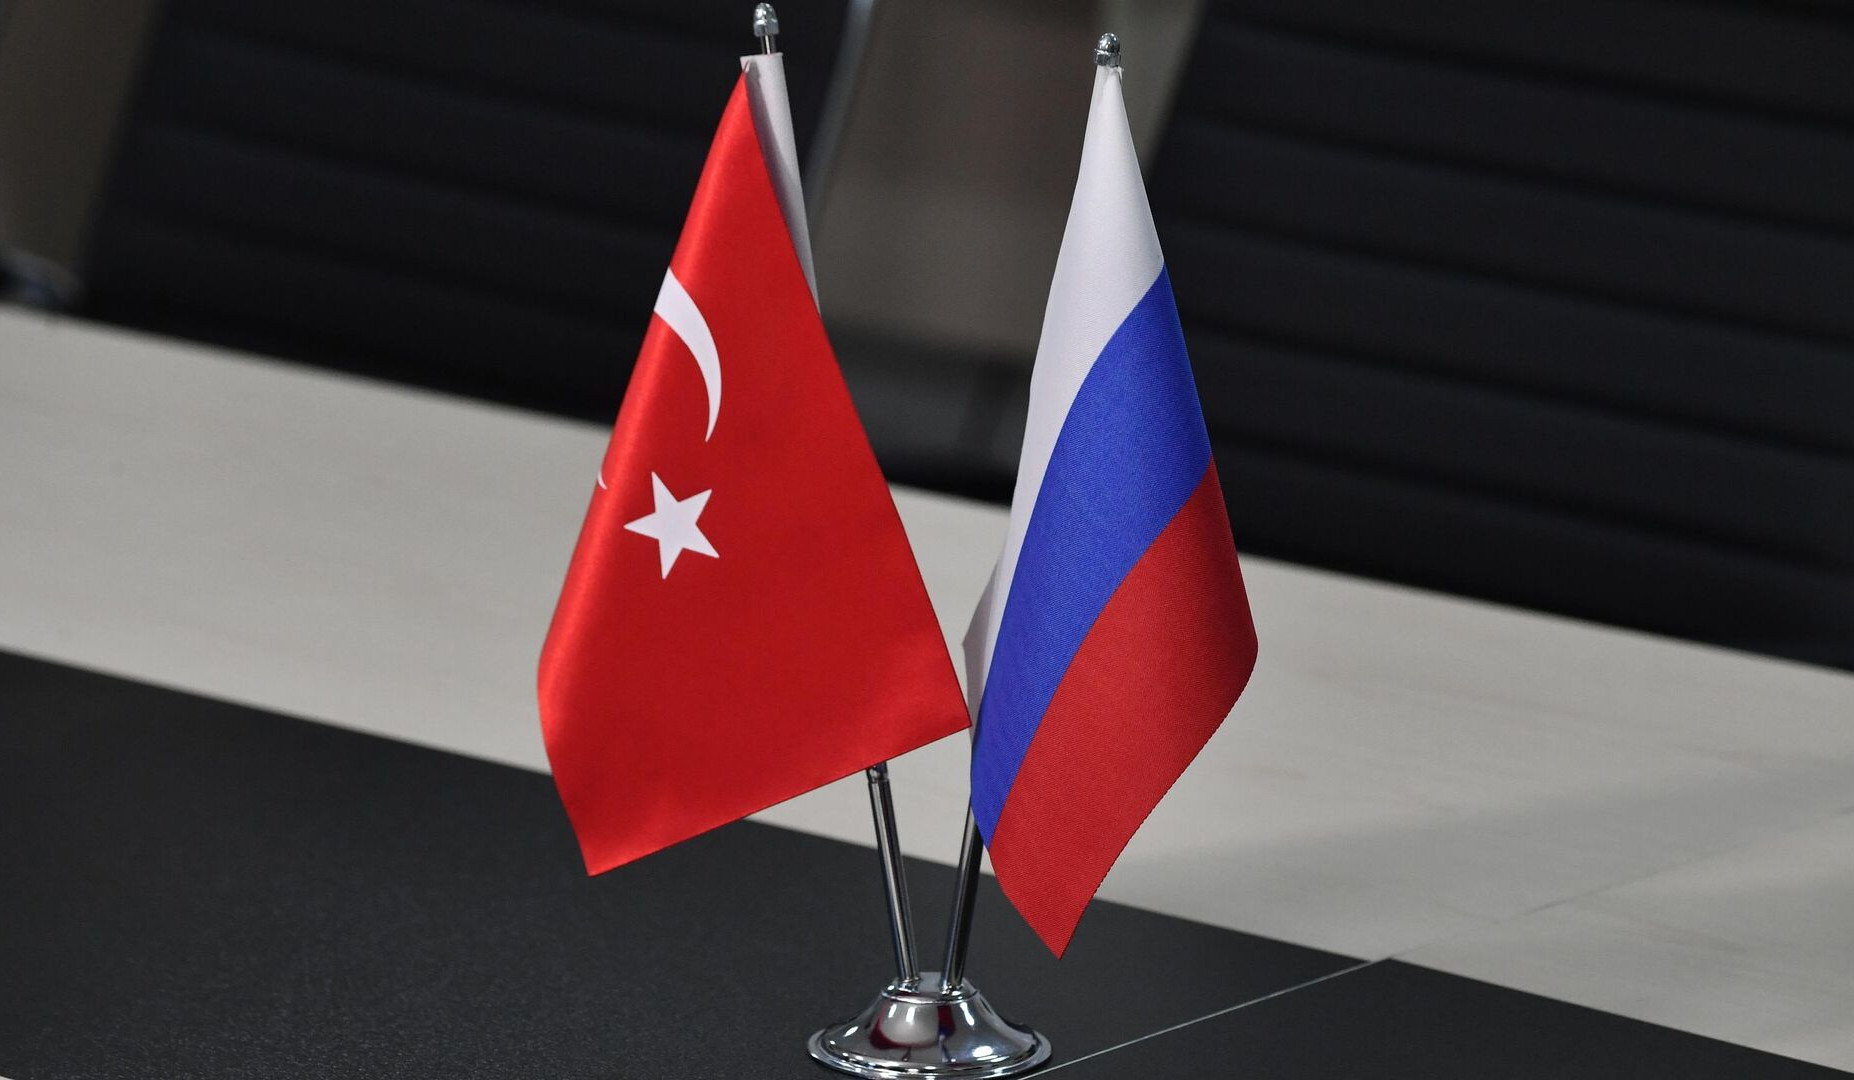 Գալուզինը Թուրքիայի դեսպանի հետ քննարկել է իրավիճակը Հարավային Կովկասում և Հայաստան-Թուրքիա հարաբերությունները